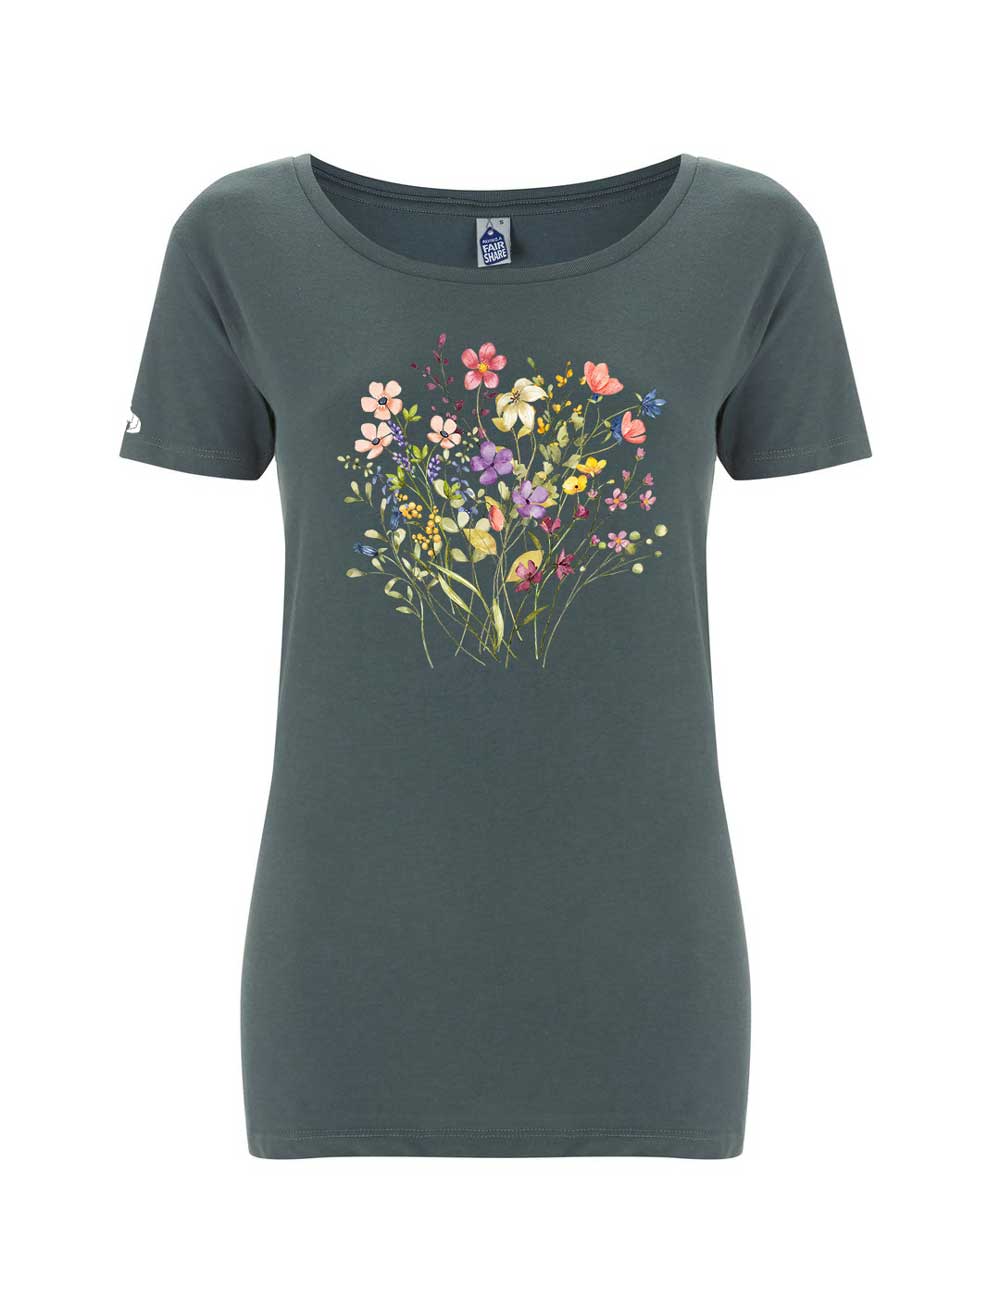 Women's Fairtrade Wild Flowers T-shirt